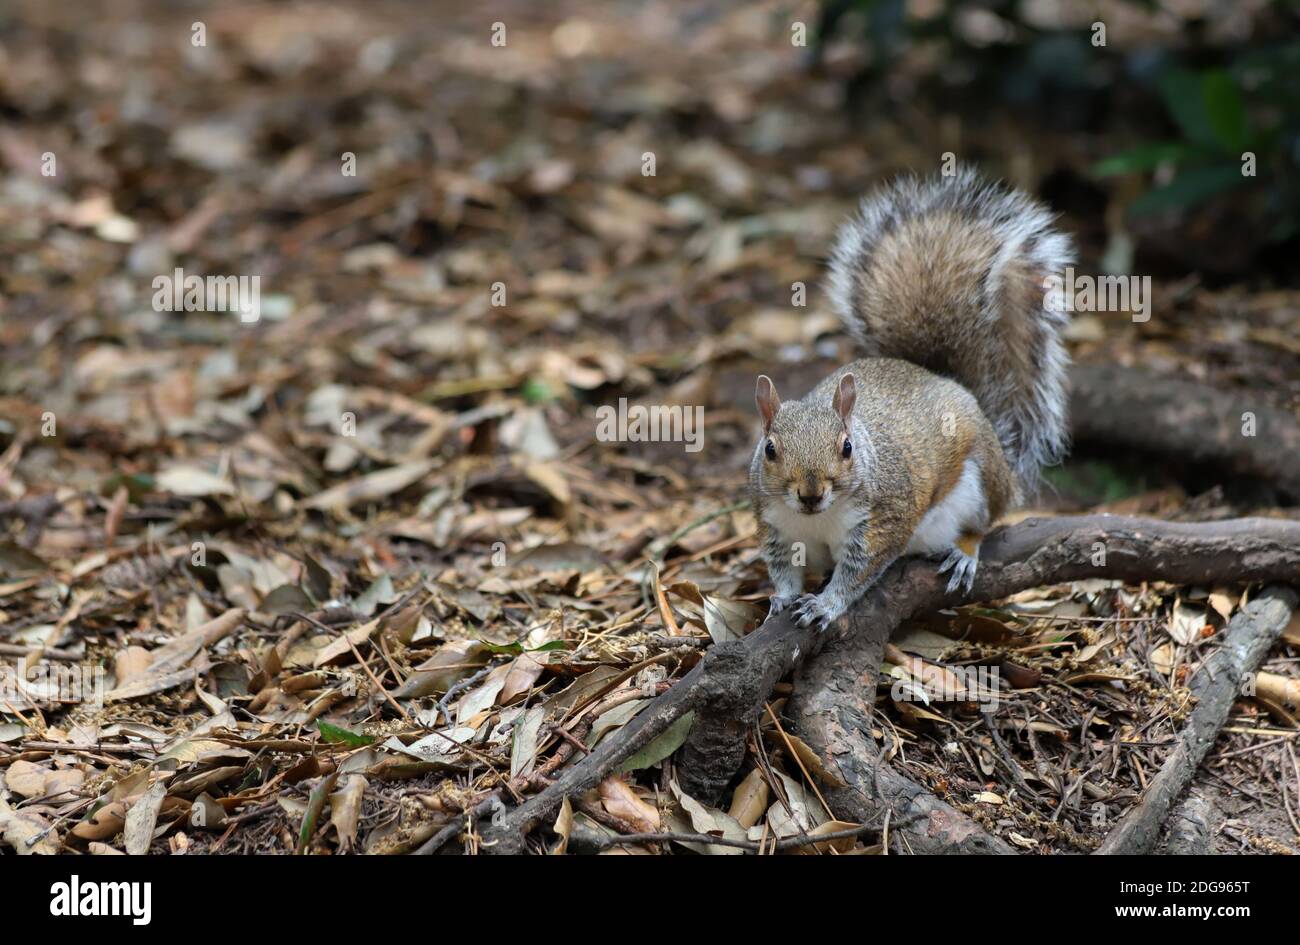 Un écureuil gris à queue brousse sur une branche d'arbre déchue au milieu du sol forestier parsemé de feuilles et regarde vers la caméra. Banque D'Images